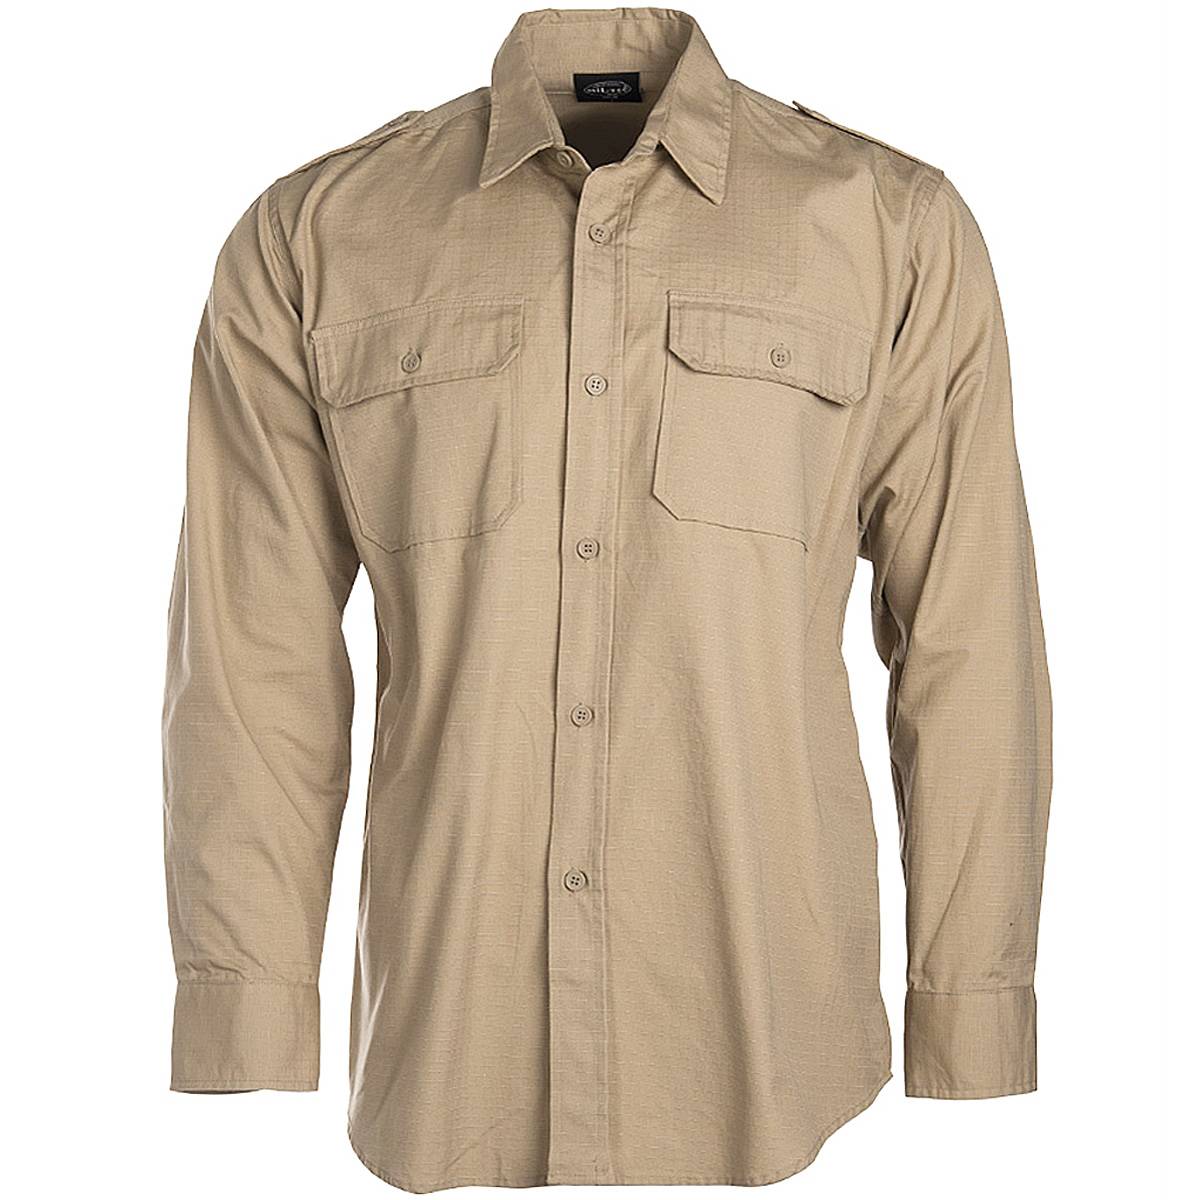 US Army Shirt mit Ärmeltaschen MFH kurzarm div Farben Baumwolle Hemd BW NEU